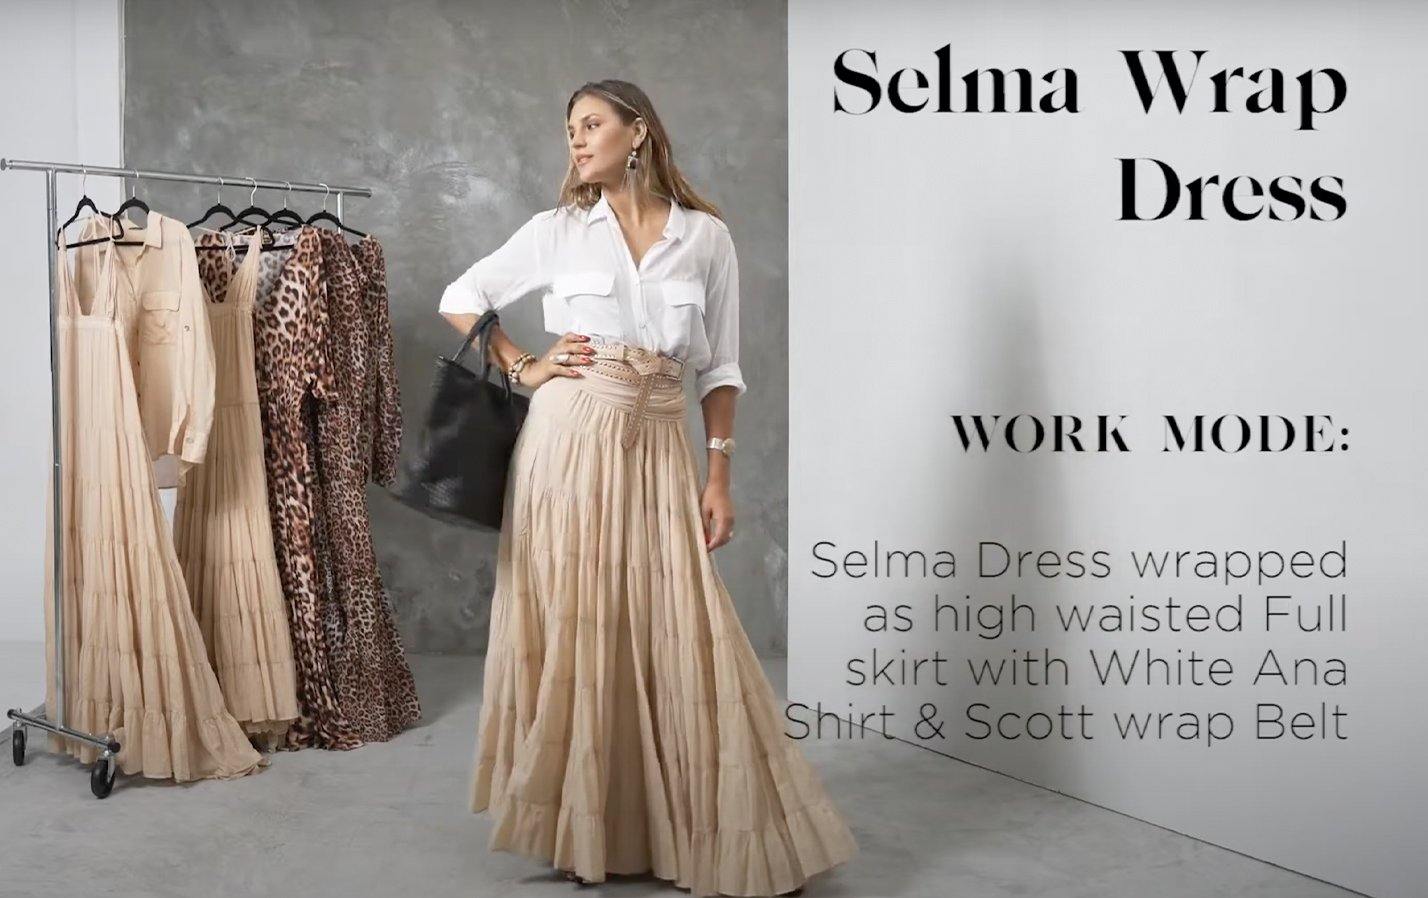 HOW TO STYLE - SELMA WRAP DRESS - Erika Peña